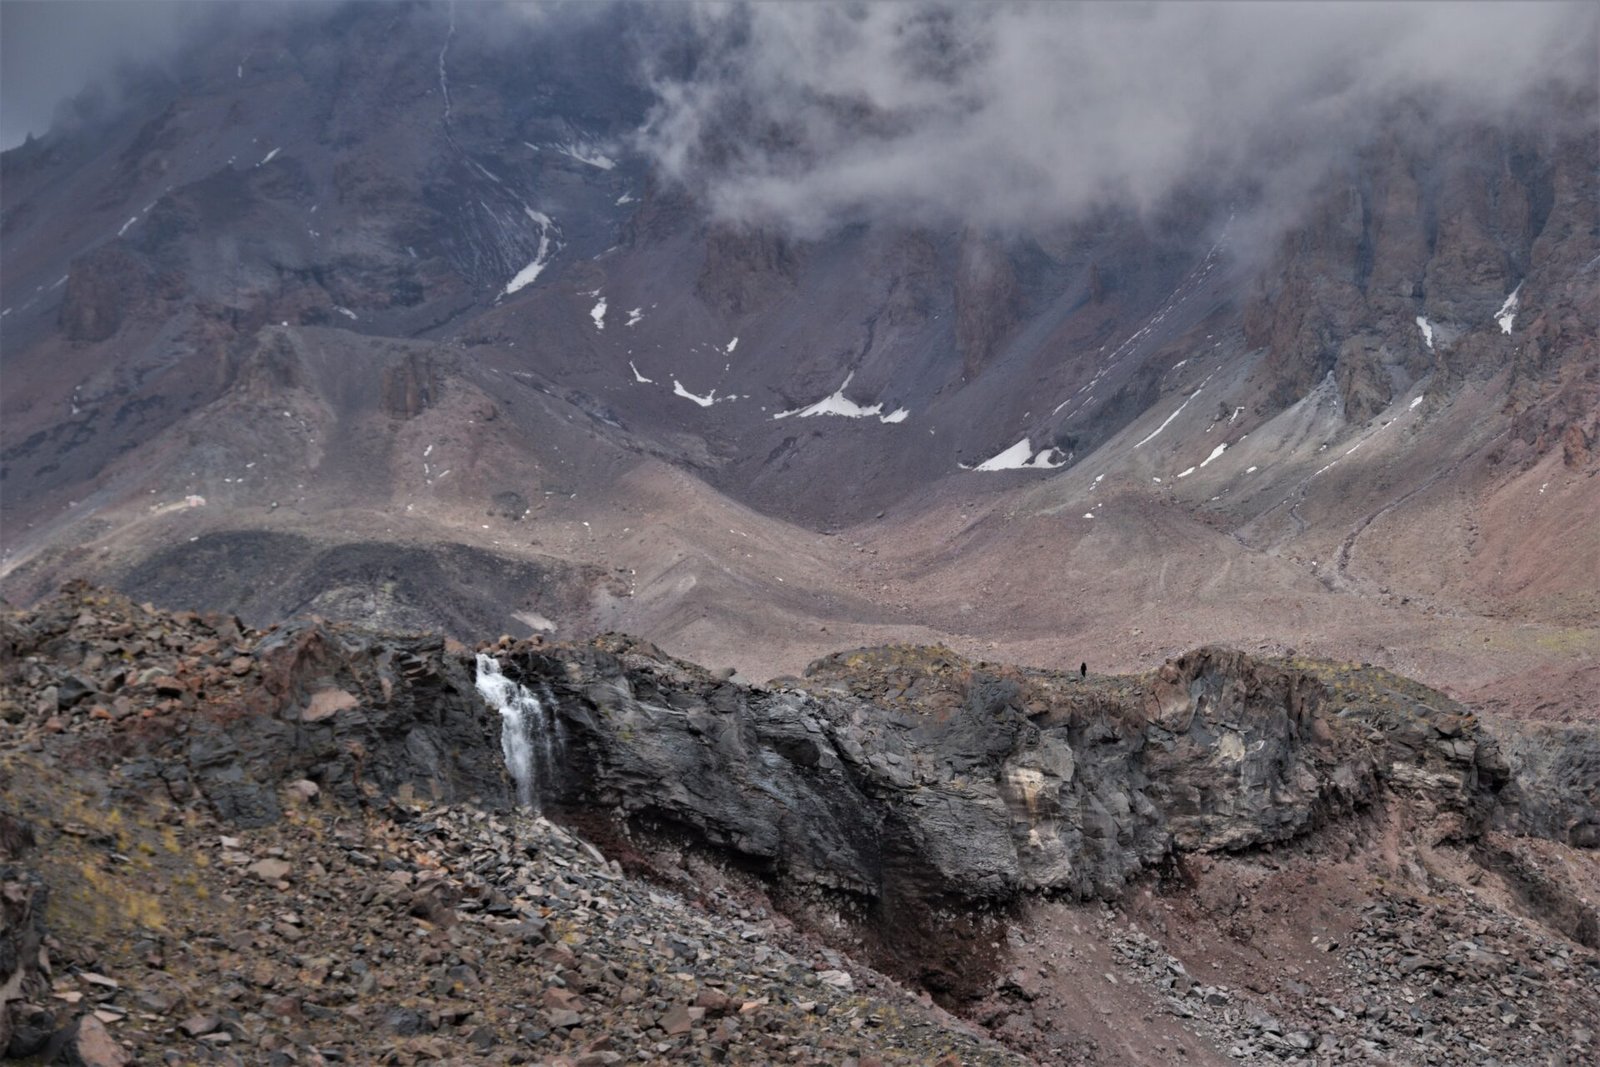 a hiker walking a long a cliffside below Gergeti glacier